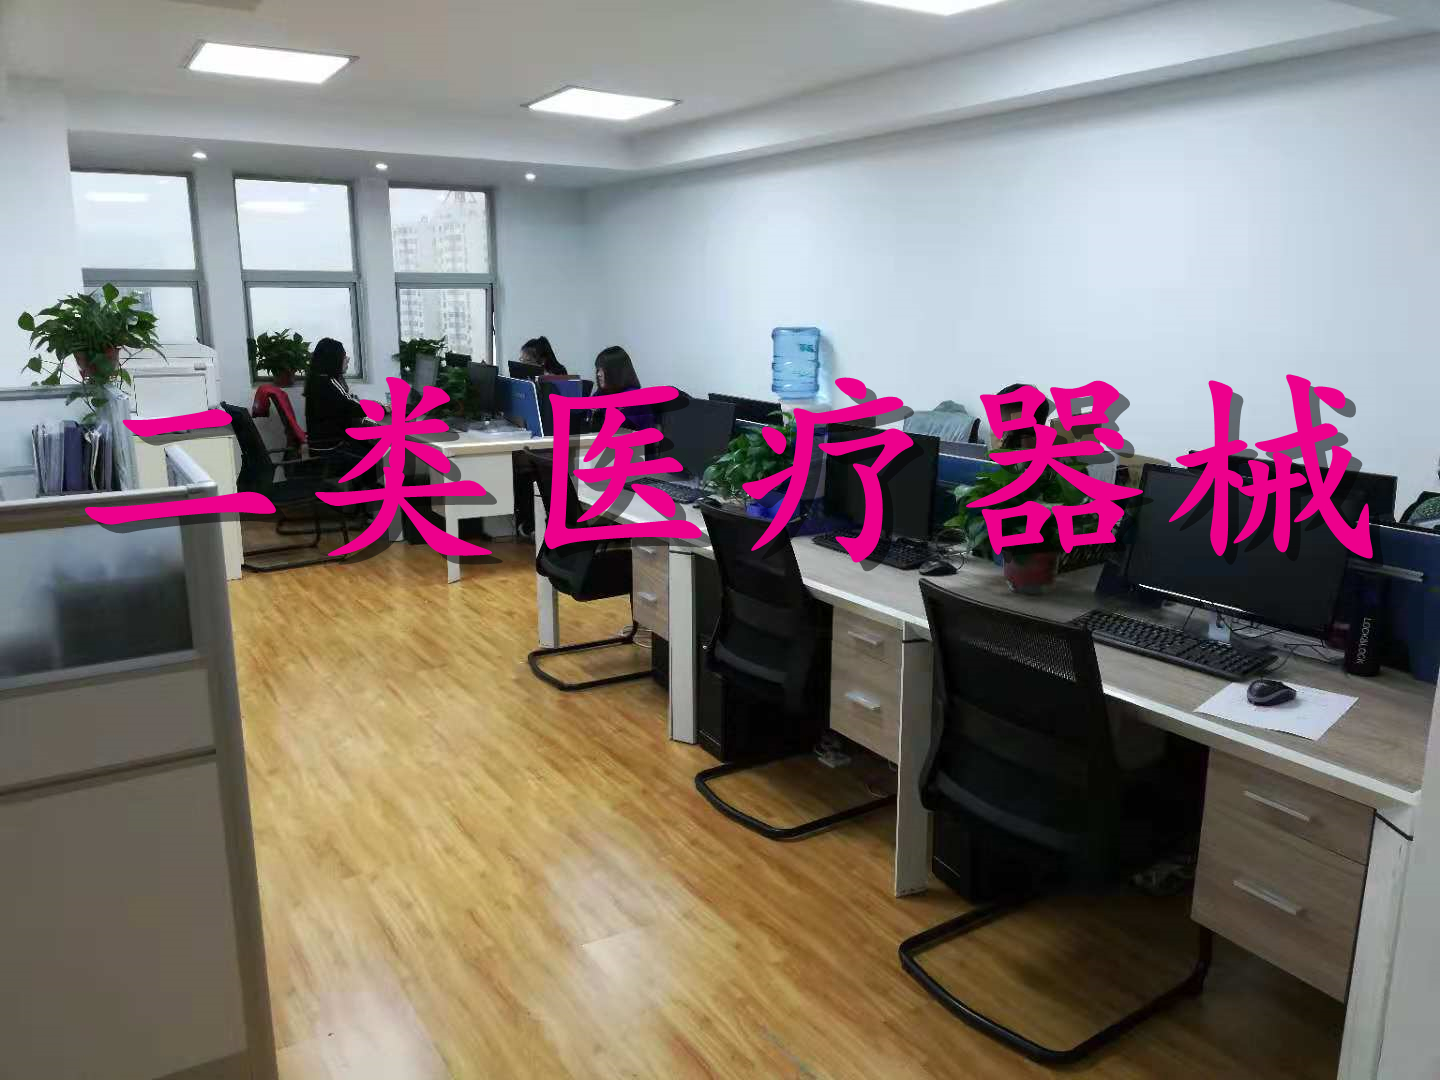 天津武清区申请二类医疗器械经营许可证的流程